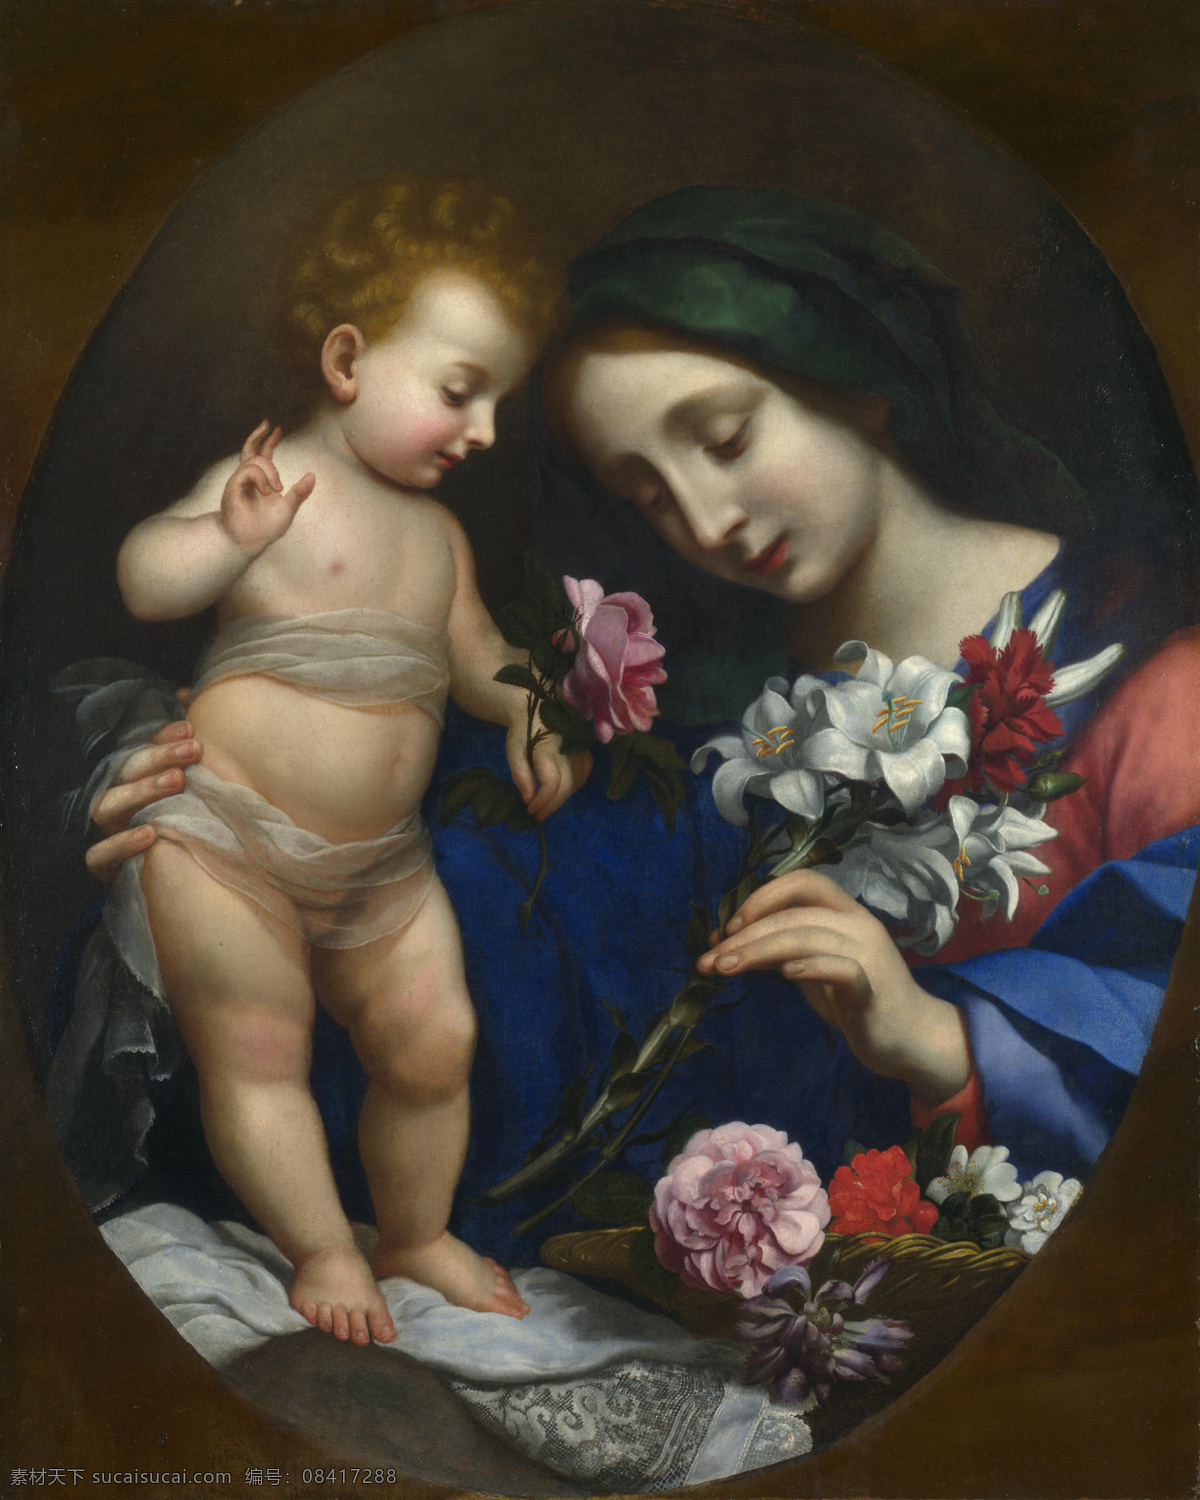 圣母 玛丽亚 油画 油画写生 人物油画 人物写生 人物肖像画 绘画艺术 装饰画 书画文字 文化艺术